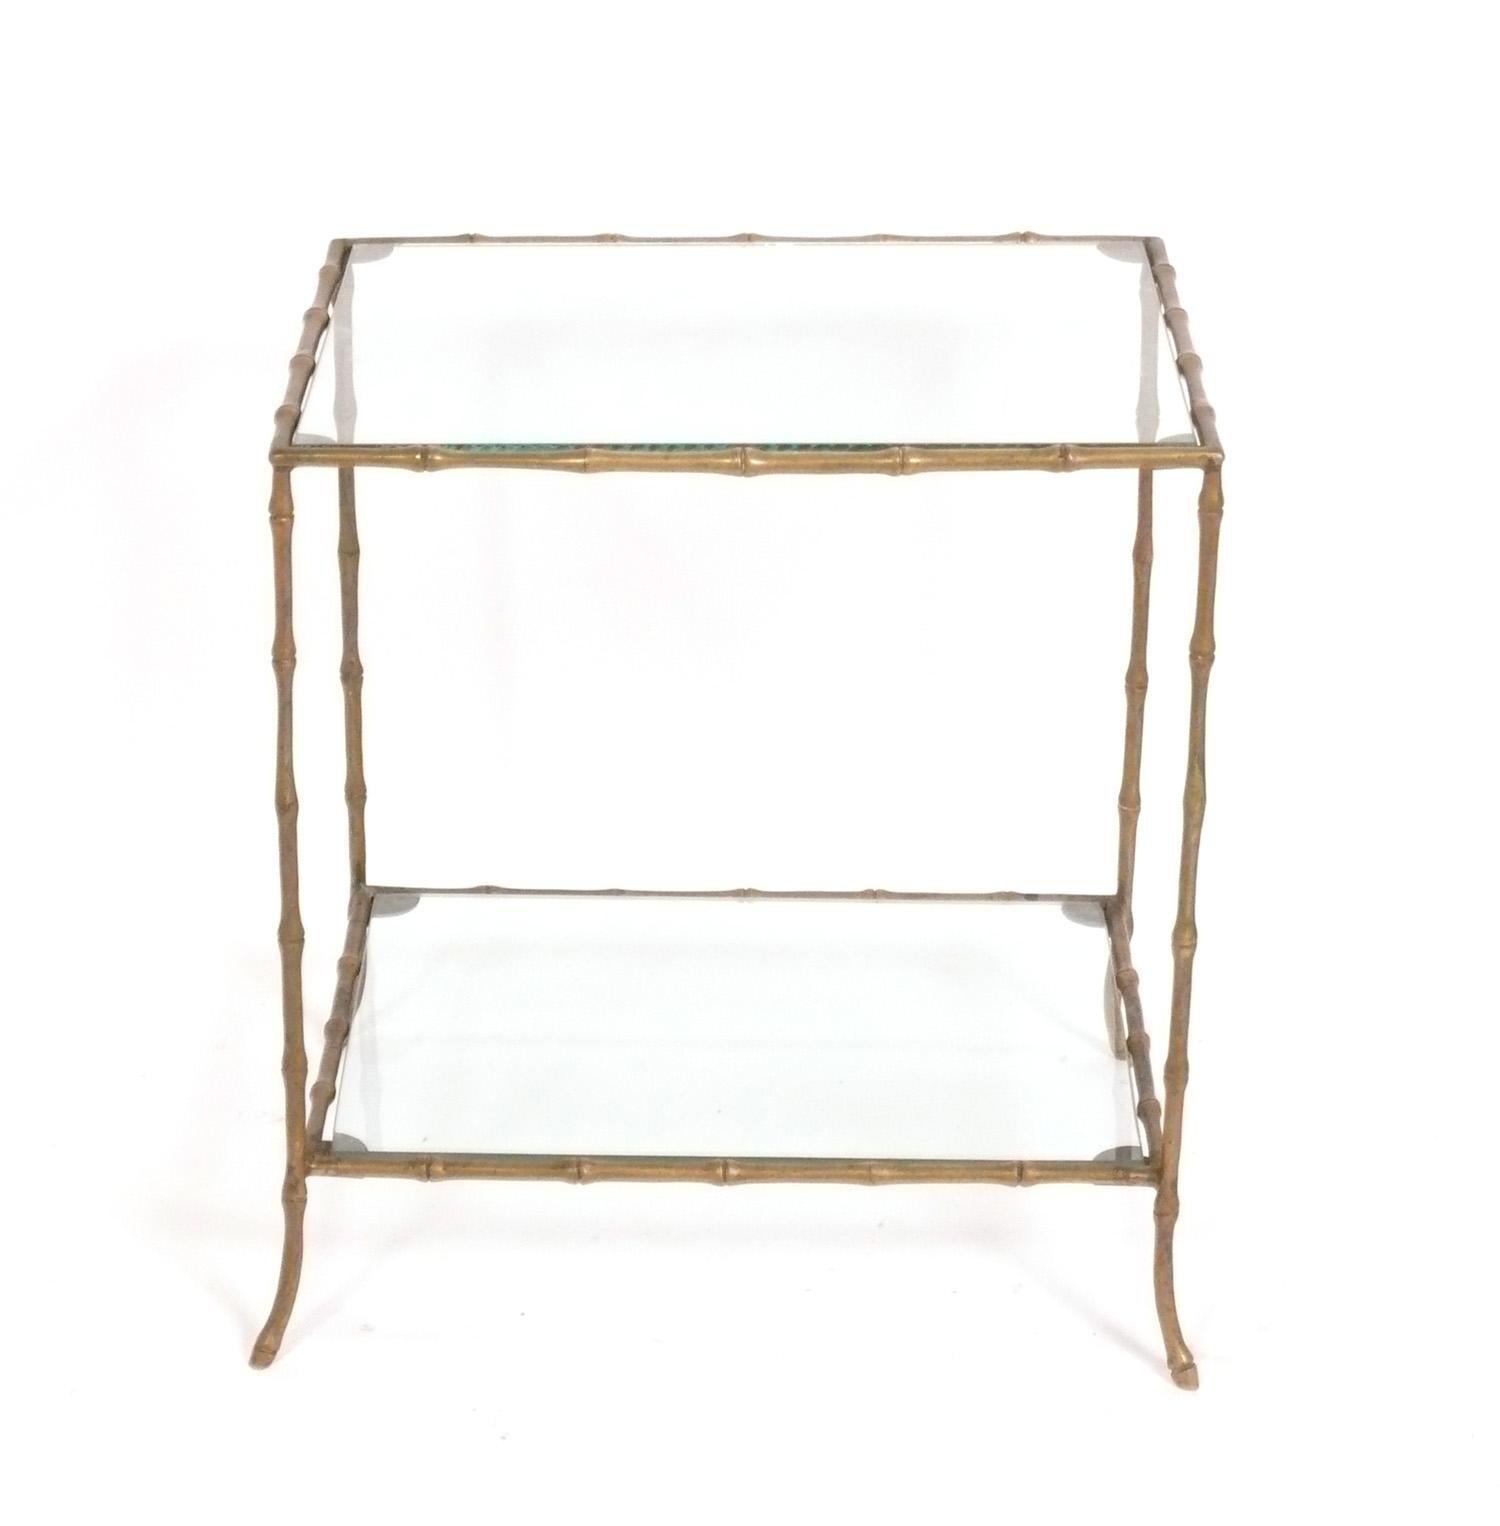 Elégante table en laiton et faux bambou, attribuée à la Maison Bagues, France, vers les années 1960. Le laiton conserve sa chaude patine d'origine. De taille polyvalente, cette table peut être utilisée comme table d'appoint ou d'extrémité, ou comme